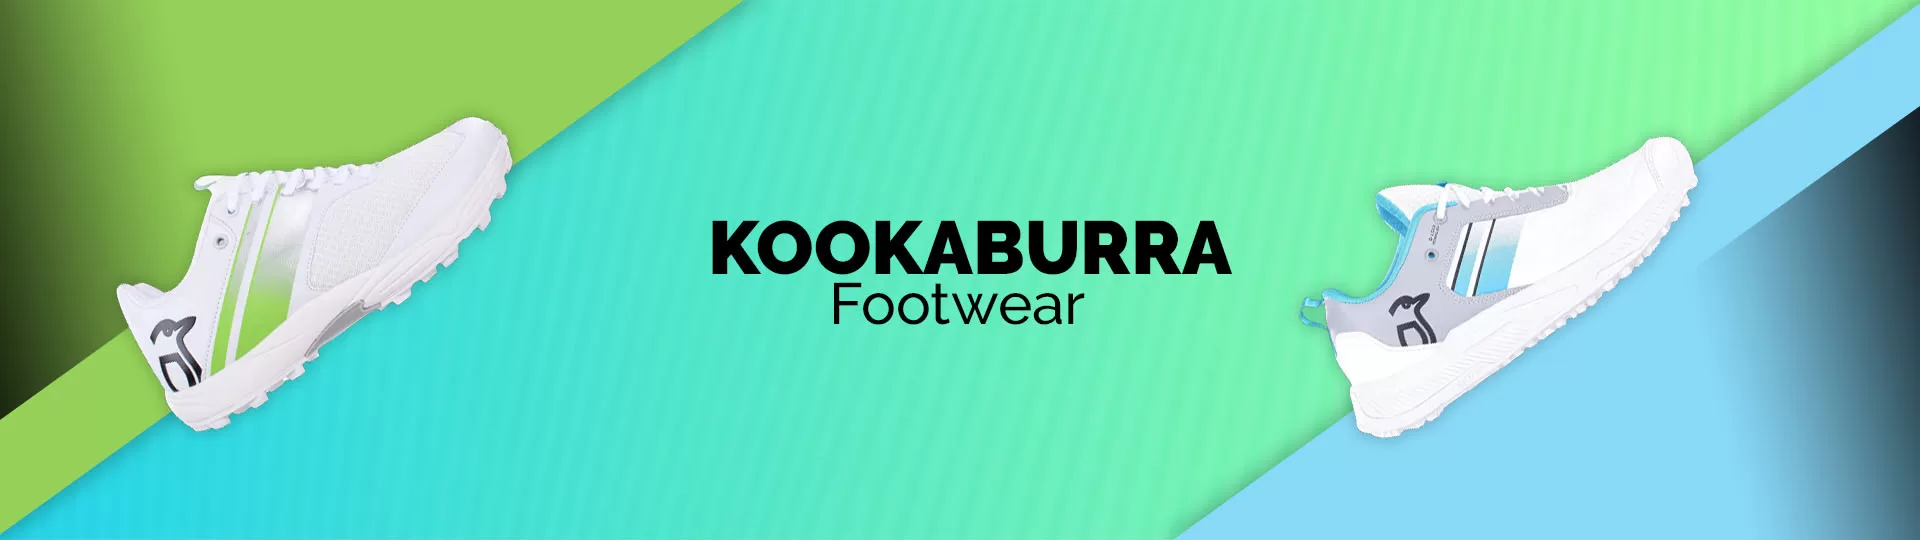 Kookaburra Cricket Footwear